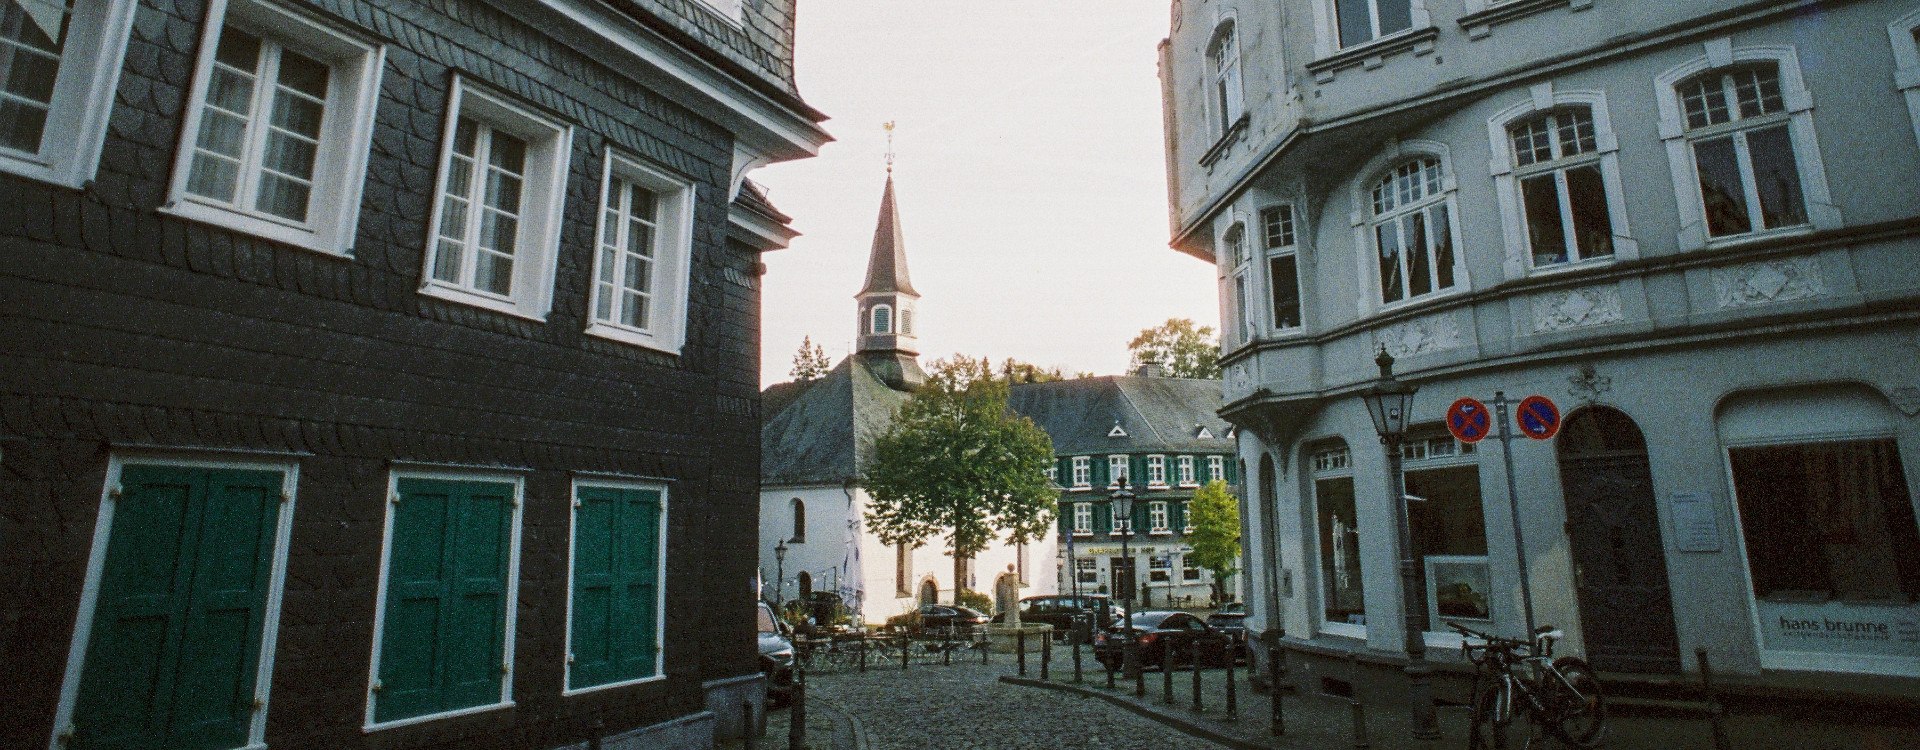 Historic center of Solingen-Gräfrath, © Johannes Höhn